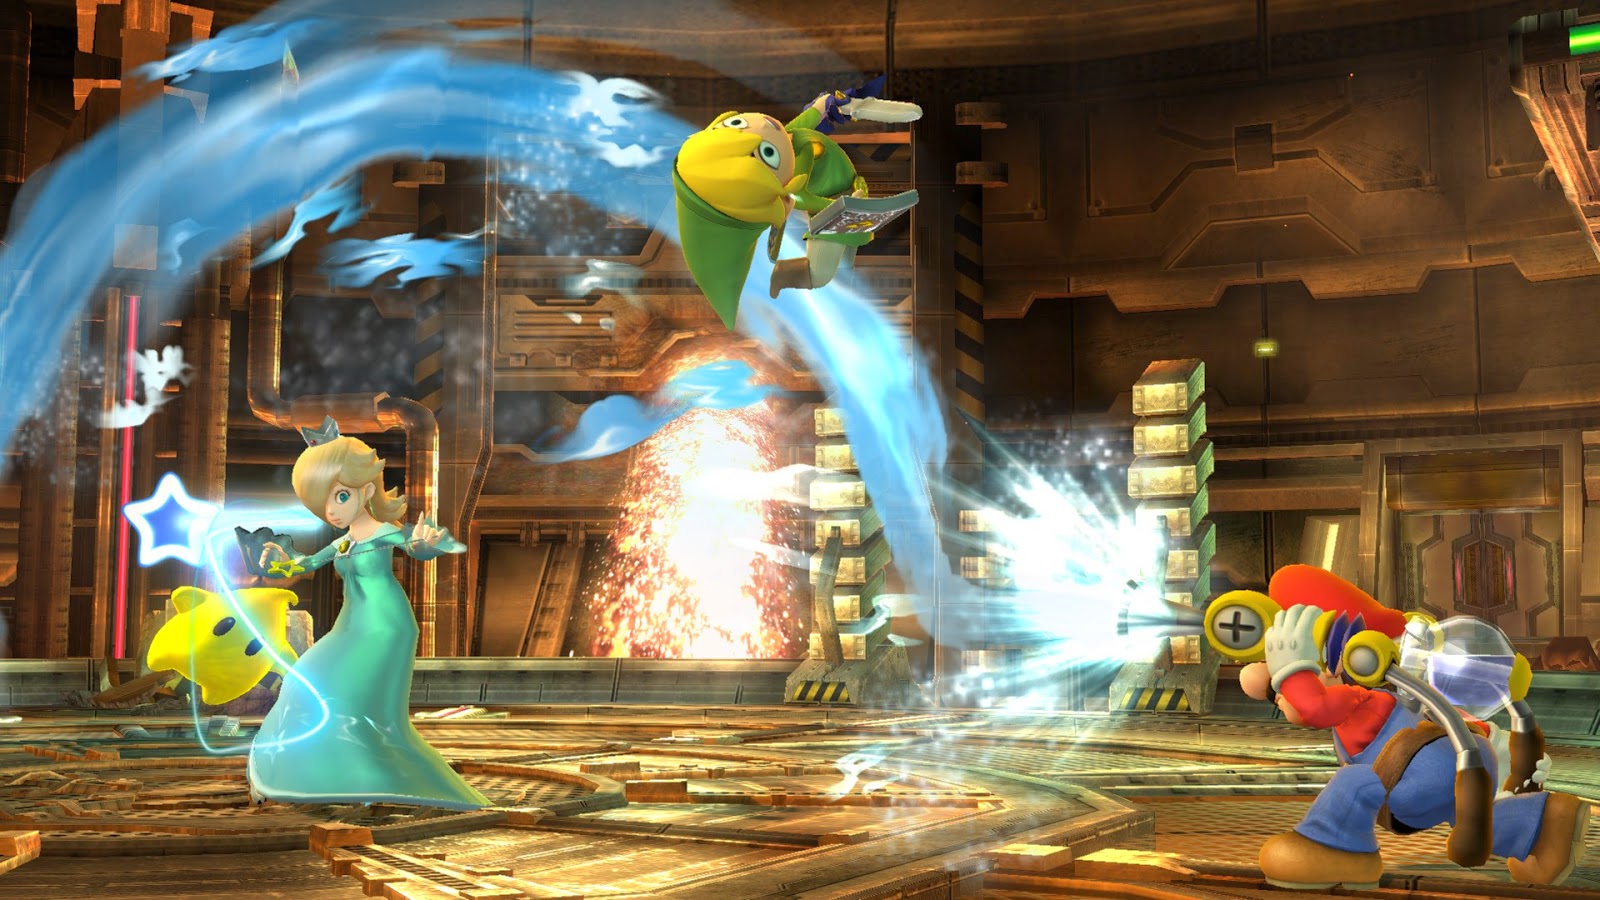 [Discussão] Super Smash Bros. for Wii U/3DS - Página 11 Super+Smash+Bros+Wii+U+3DS+NIntendo+Blast+12